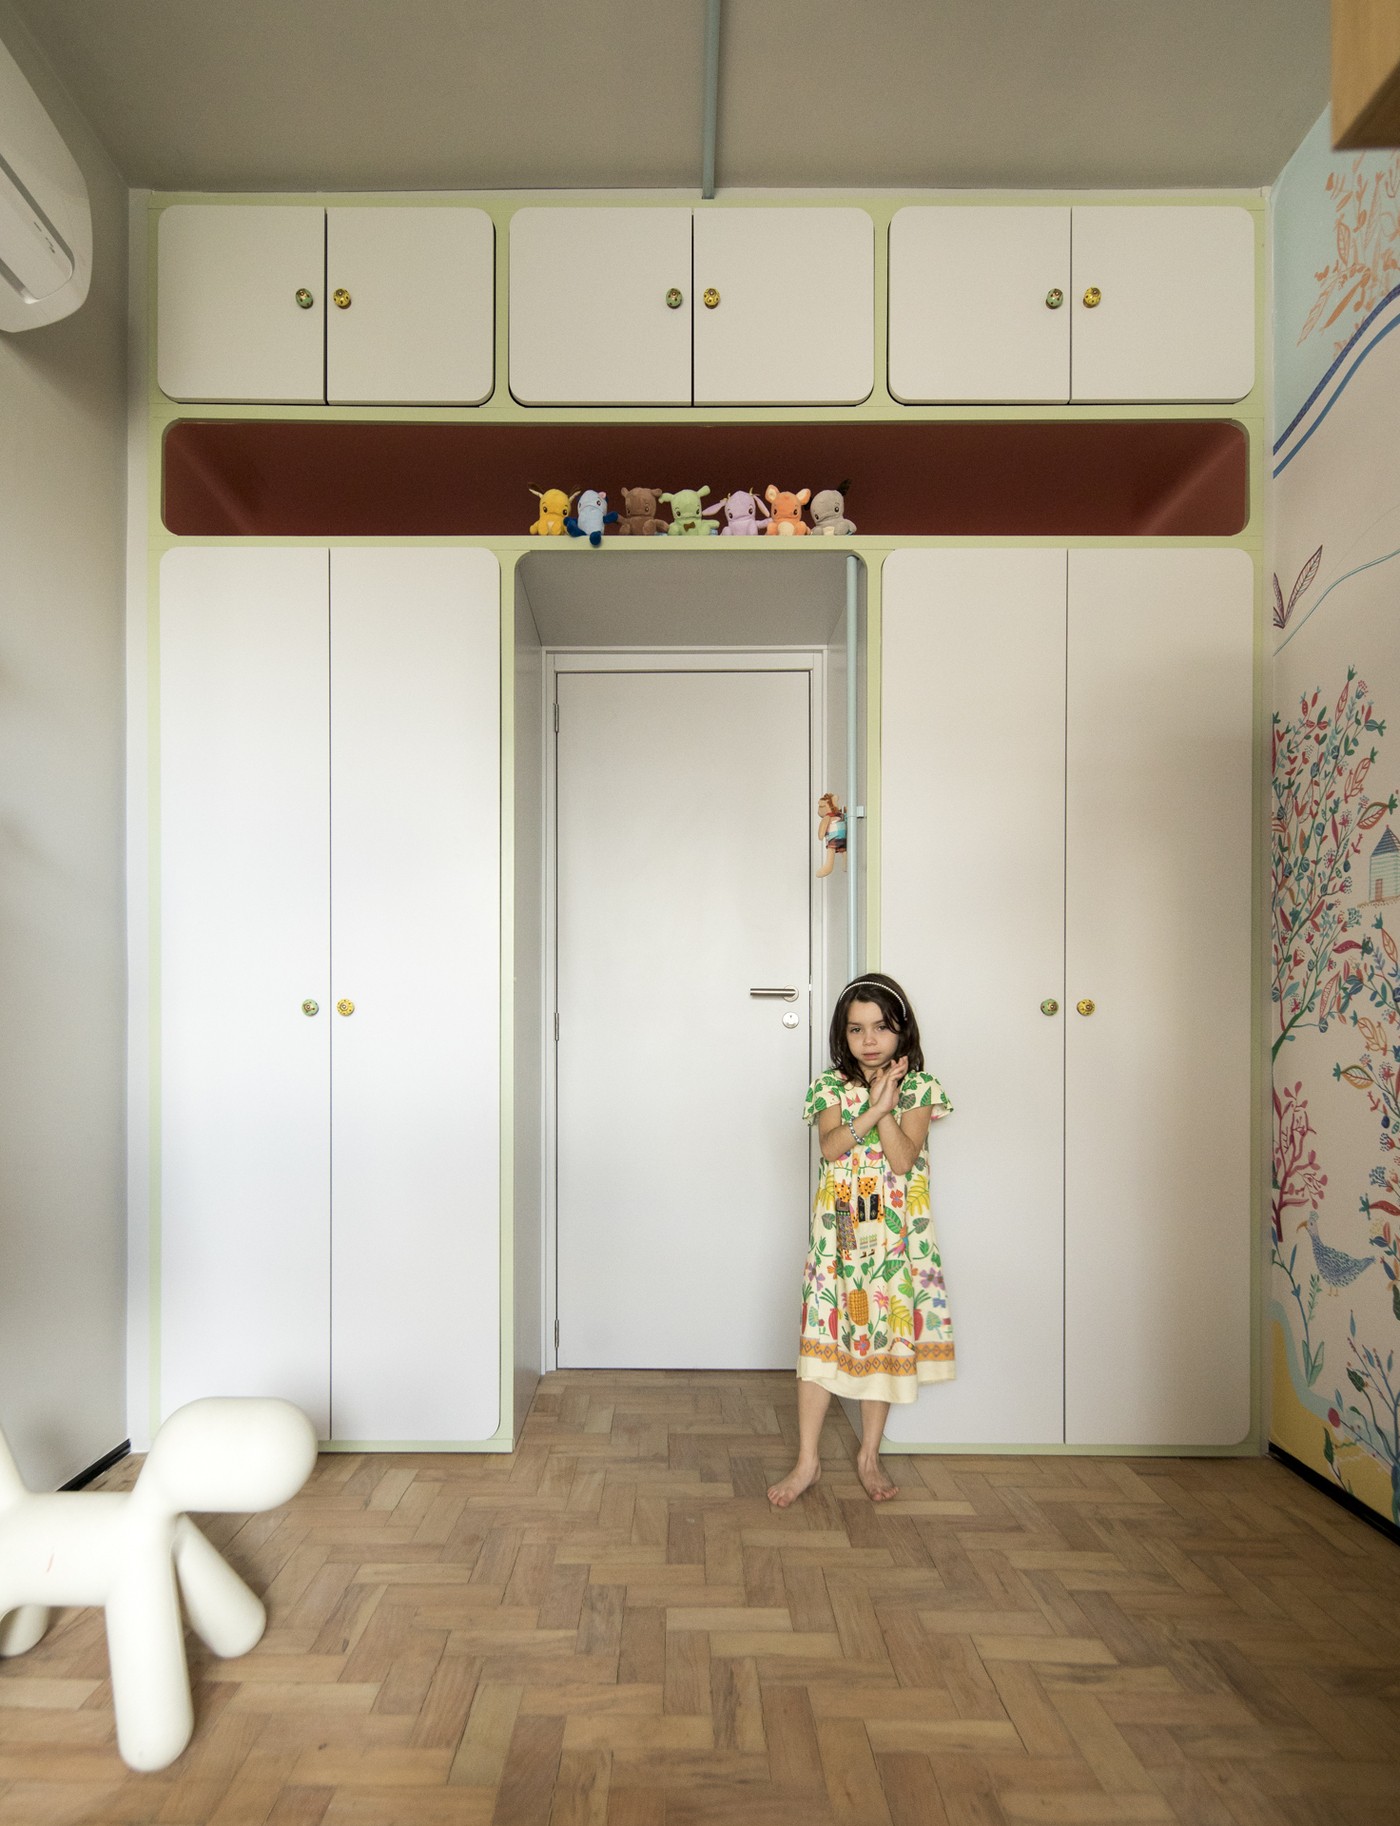 Décor do dia: quarto infantil com rede e papel de parede estampado (Foto: Maíra Acayaba)